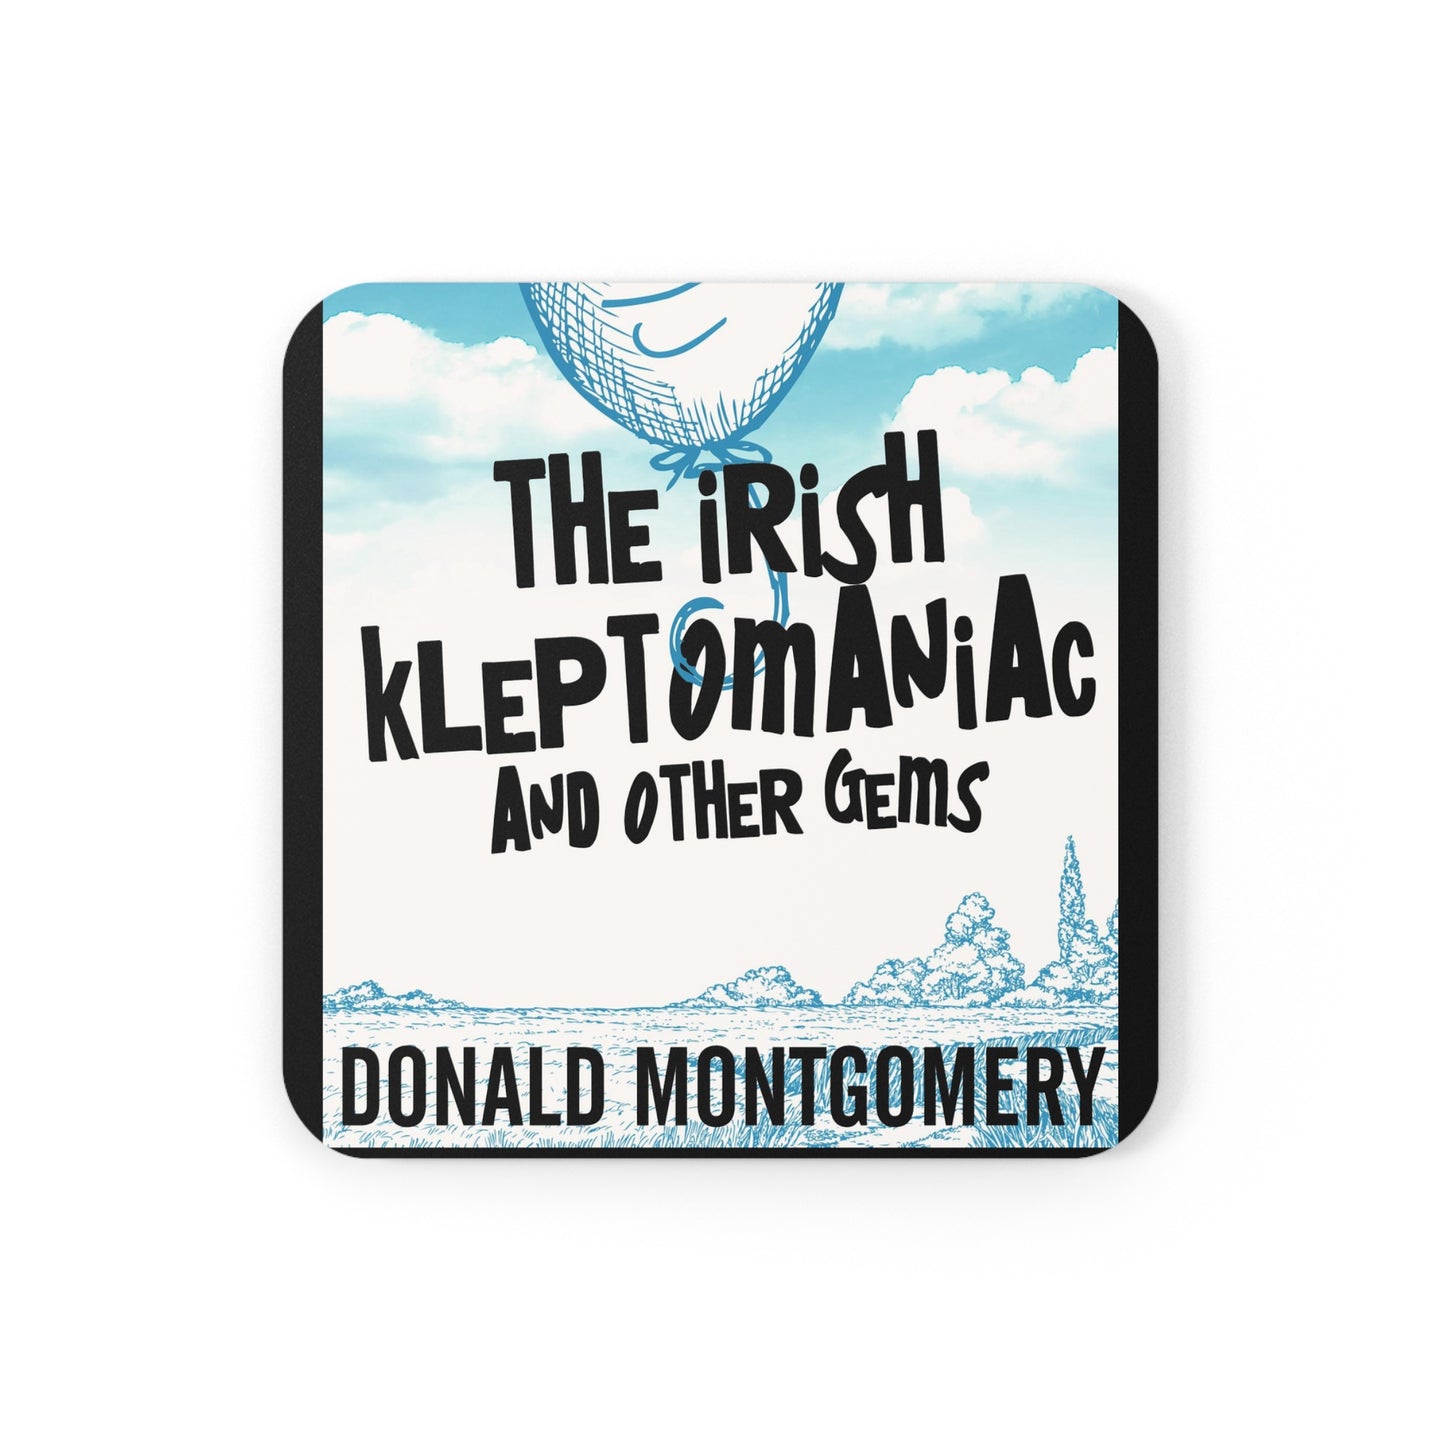 The Irish Kleptomaniac and other Gems - Corkwood Coaster Set